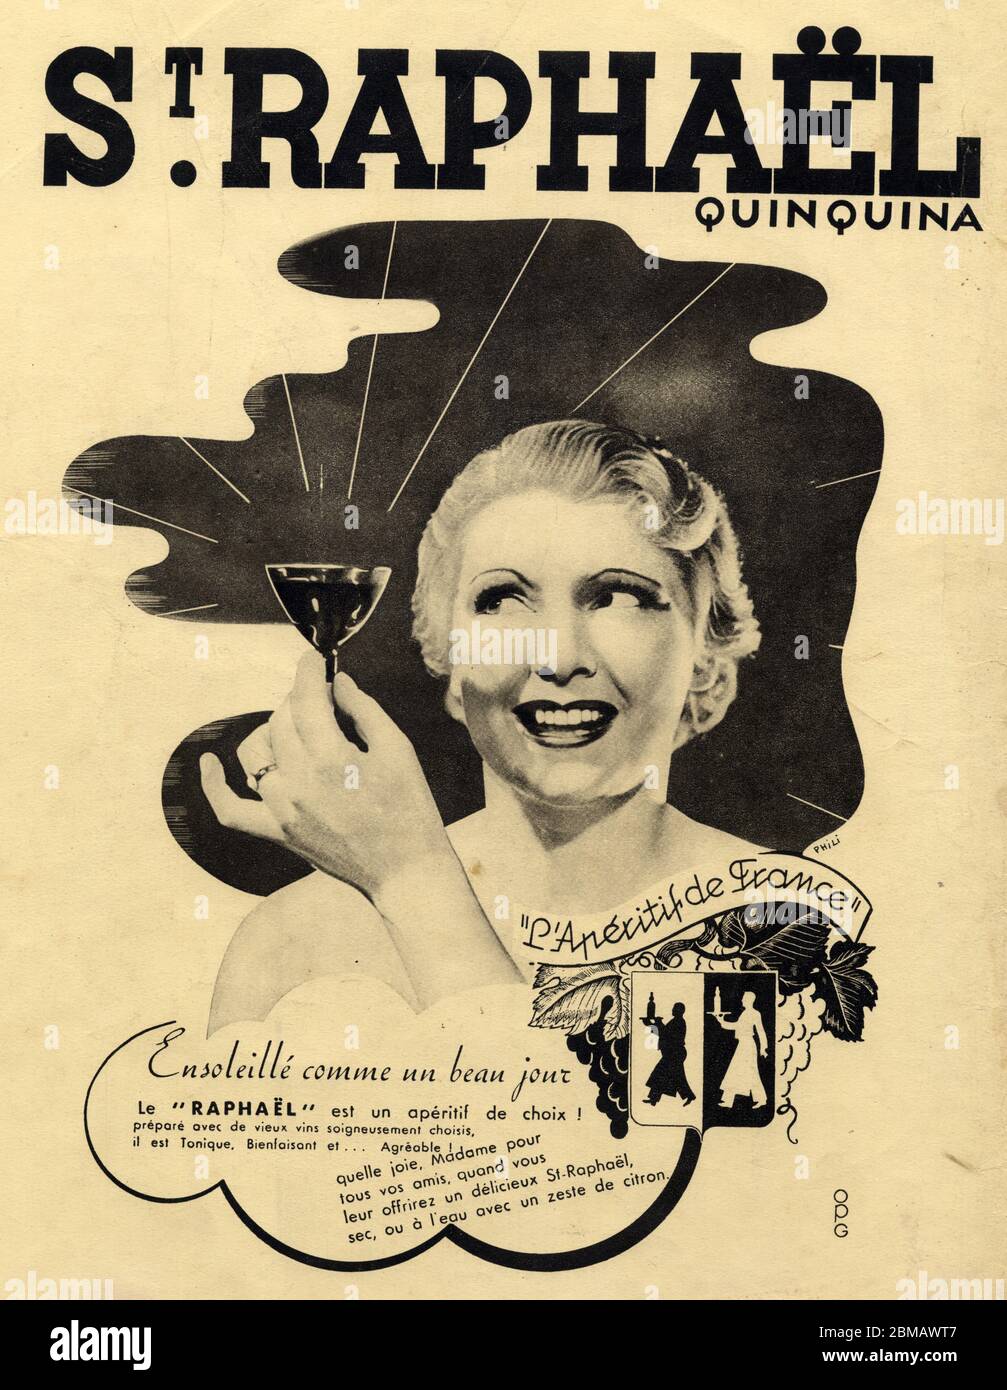 Publicité ancienne. St. Raphael Quinquina. 1937 Foto Stock